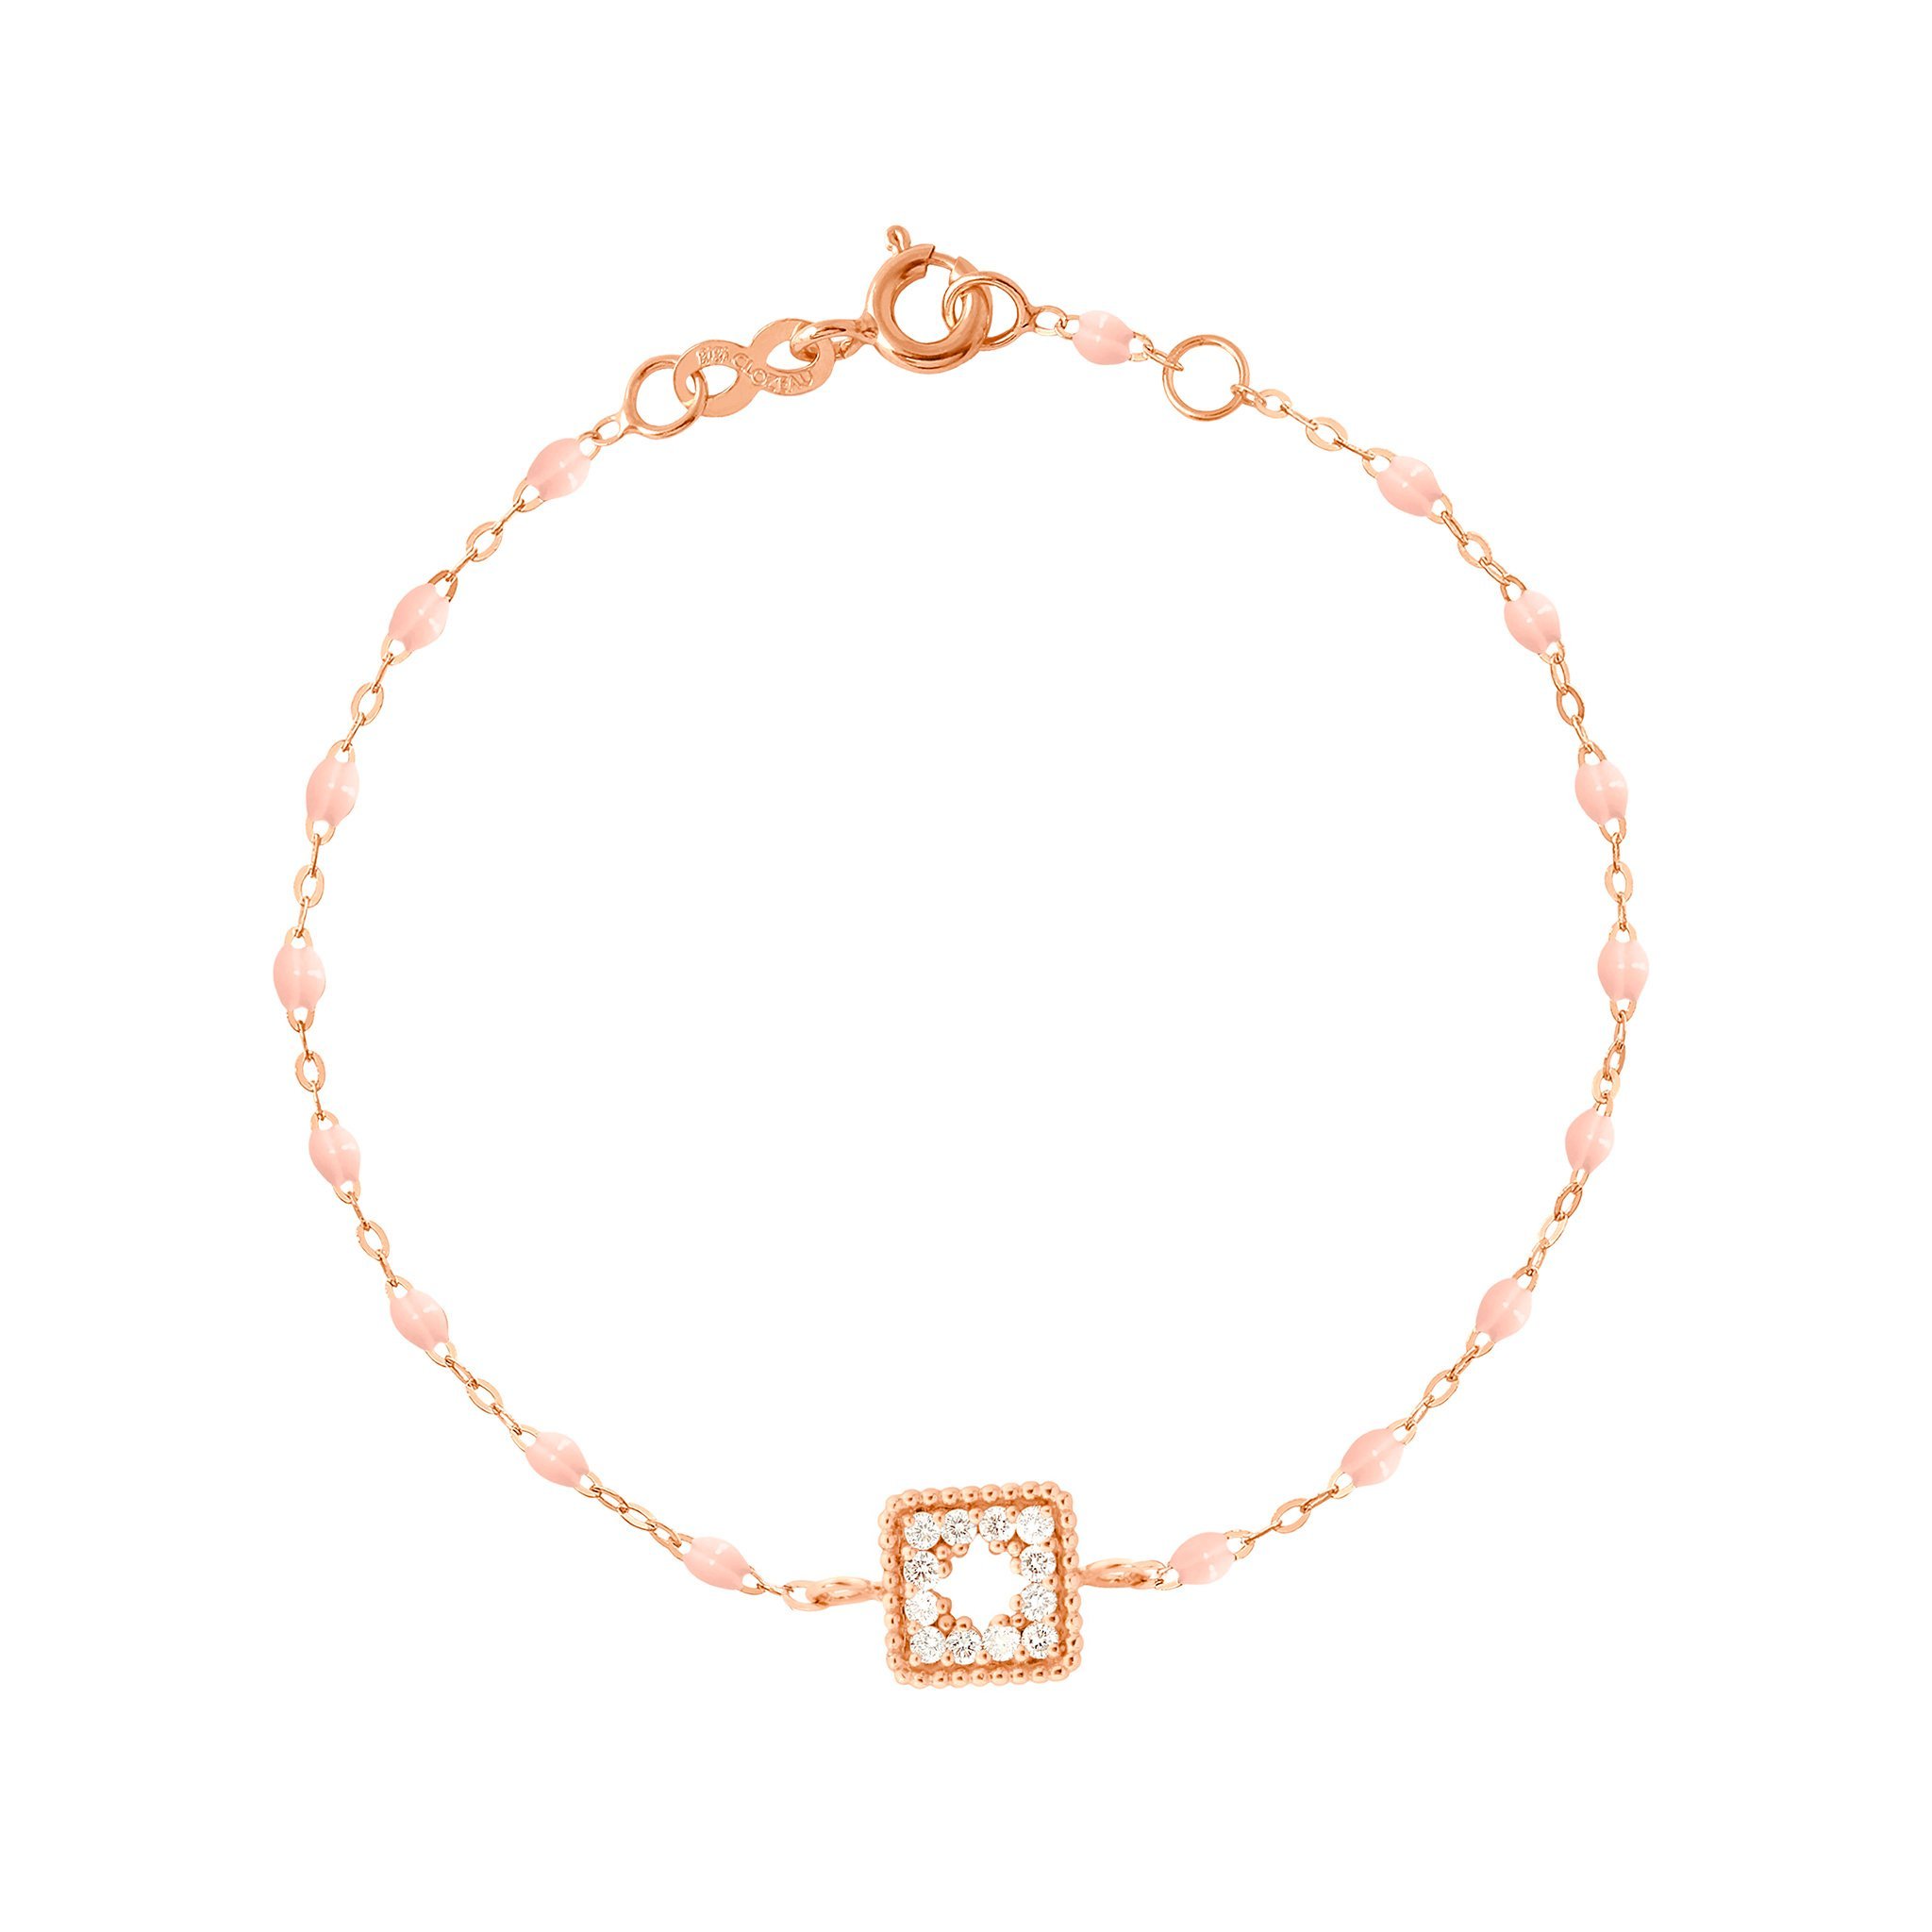 Bracelet rose bébé Trésor, diamants, or rose, 17 cm  Référence :  b3tr001r2817di -1